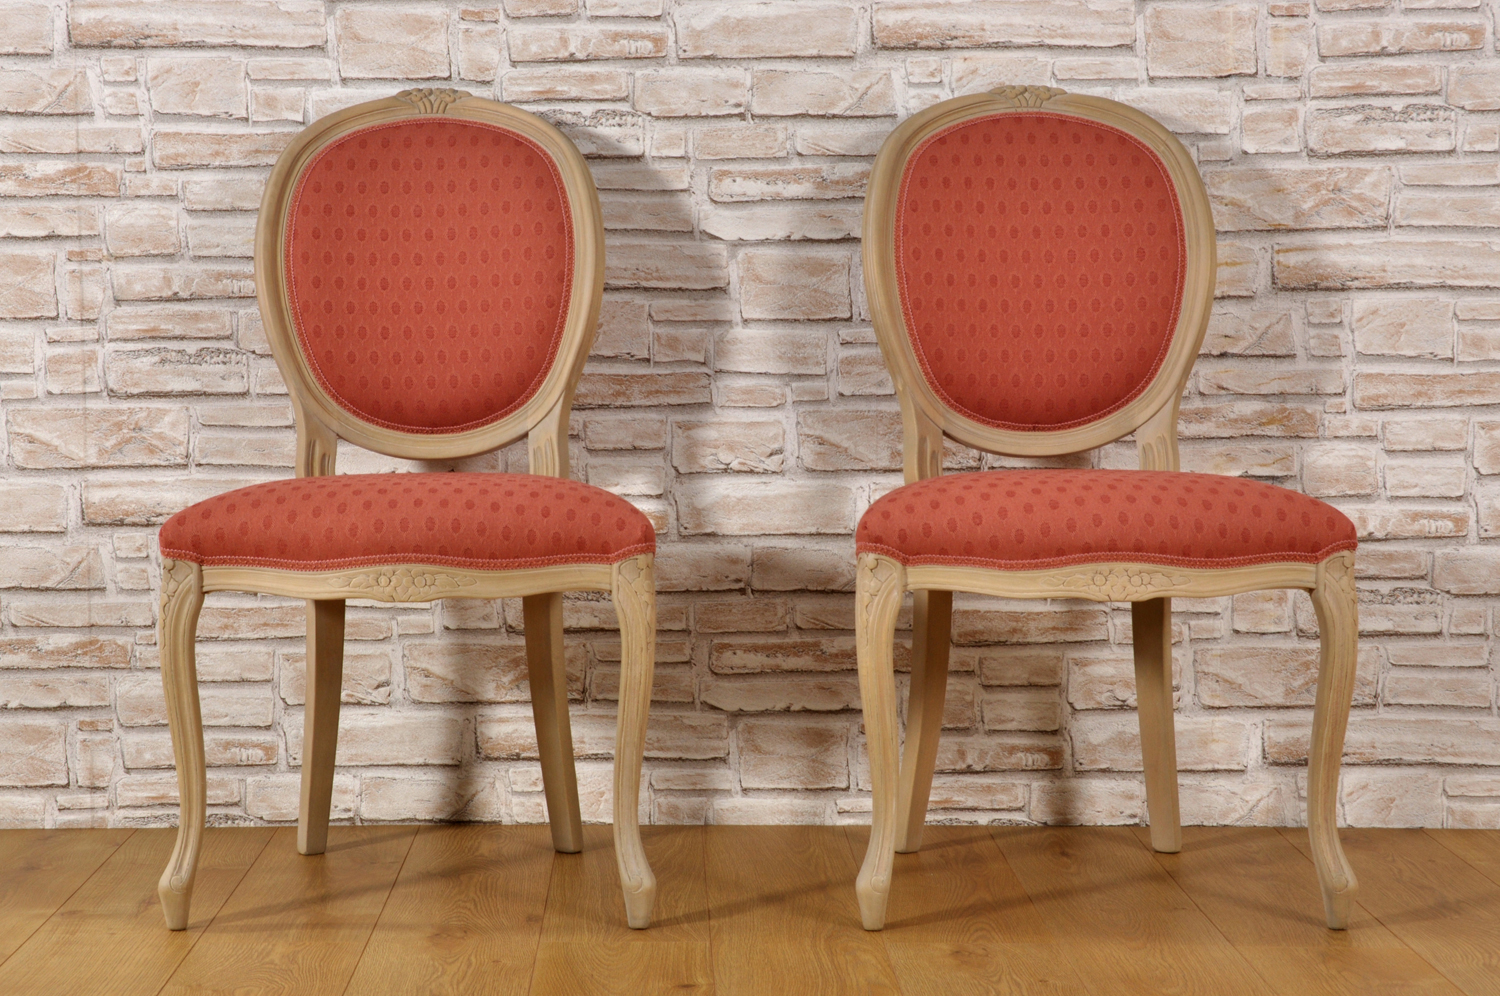 sedia prodotta su misura made in Italy realizzata a mano nello stile classico Luigi Filippo Veneto gambe sagomate e intagliate a mano schienale e seduta rivestite in tessuto operato rosso di pregio